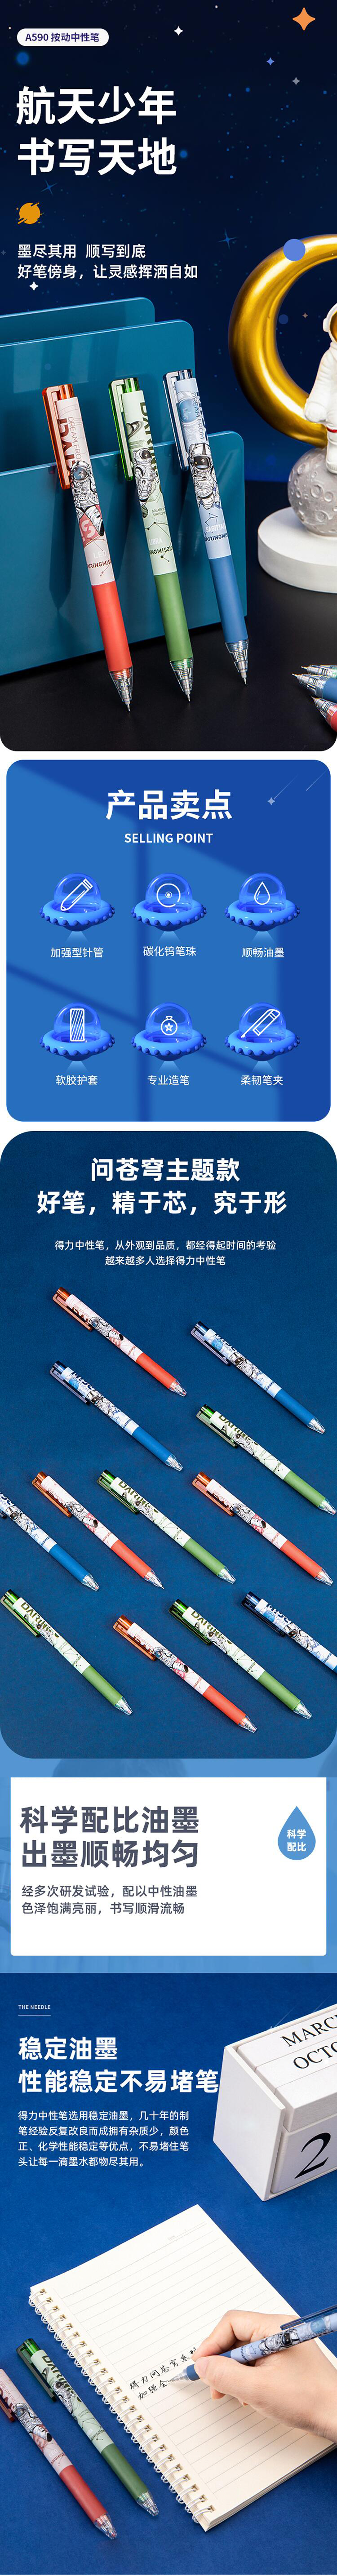 得力 deli A590 中国航天速干按动型中性笔0.5mm加强型针管(红杆)(支) .jpg